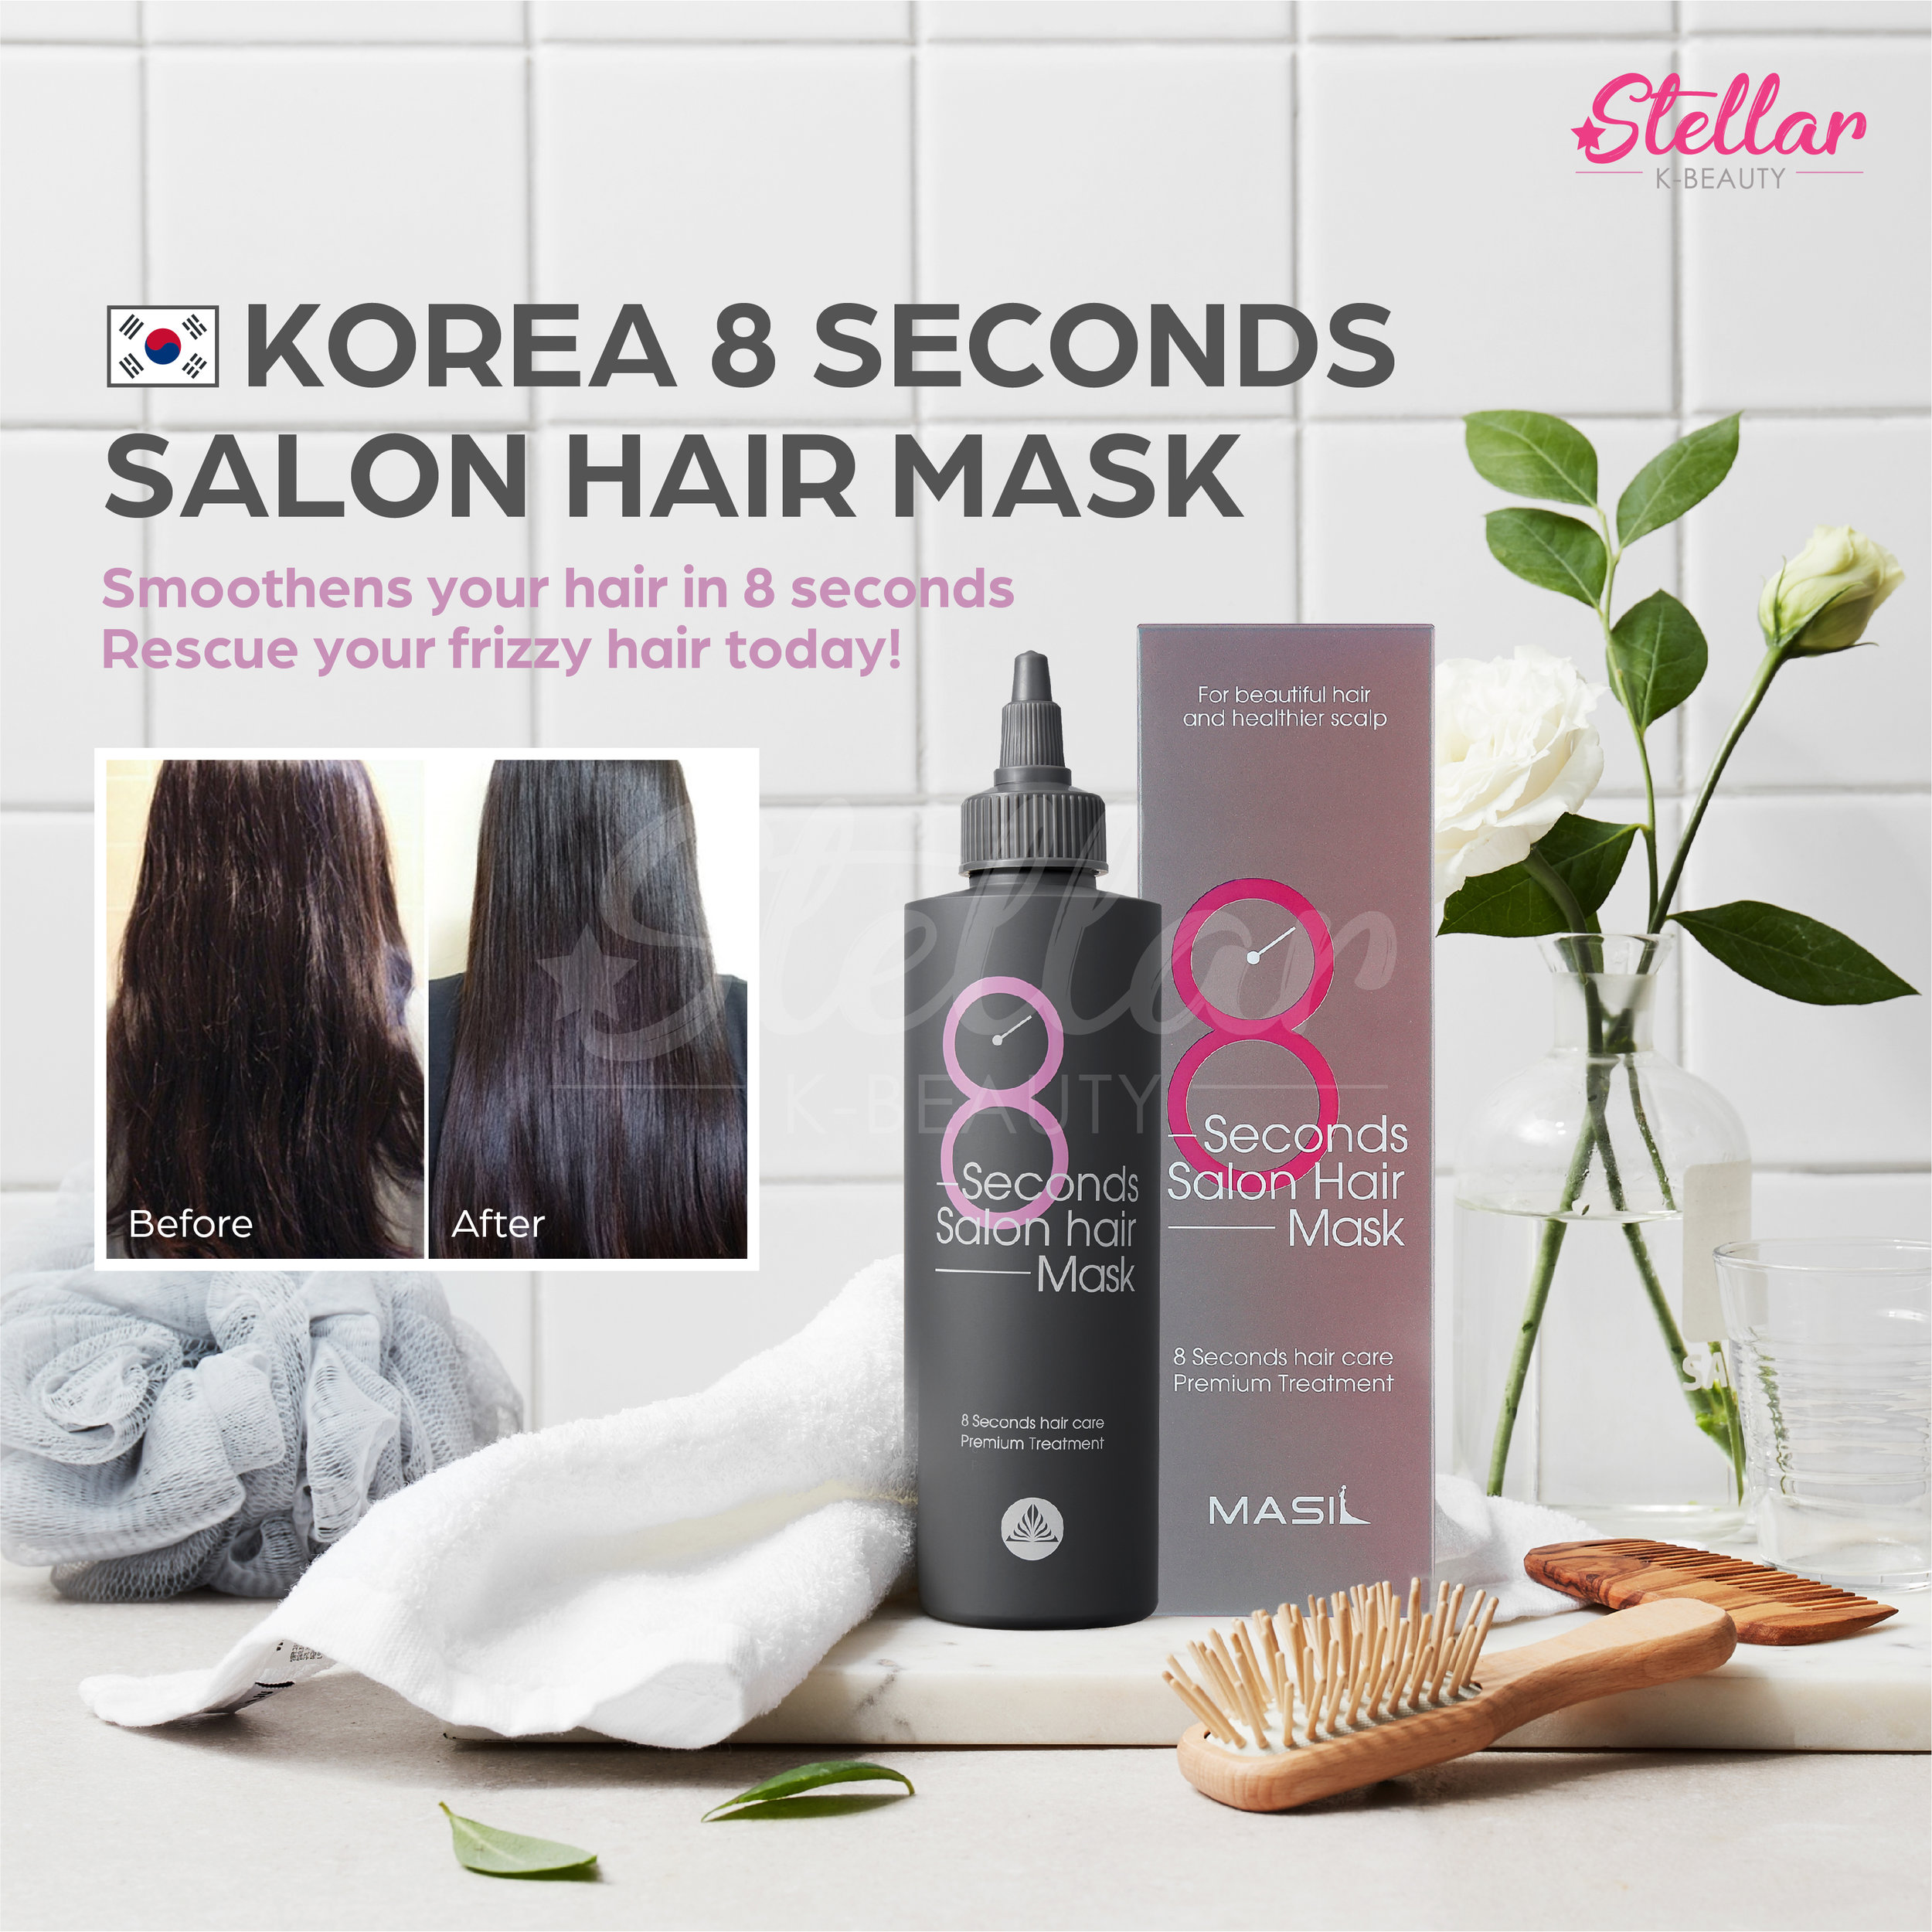 Как пользоваться маской 8 секунд для волос. Масил 8 секунд маски. 8 Seconds Salon hair Mask. Маска 8 секунд Корея. Маска для волос 8 секунд Корея.